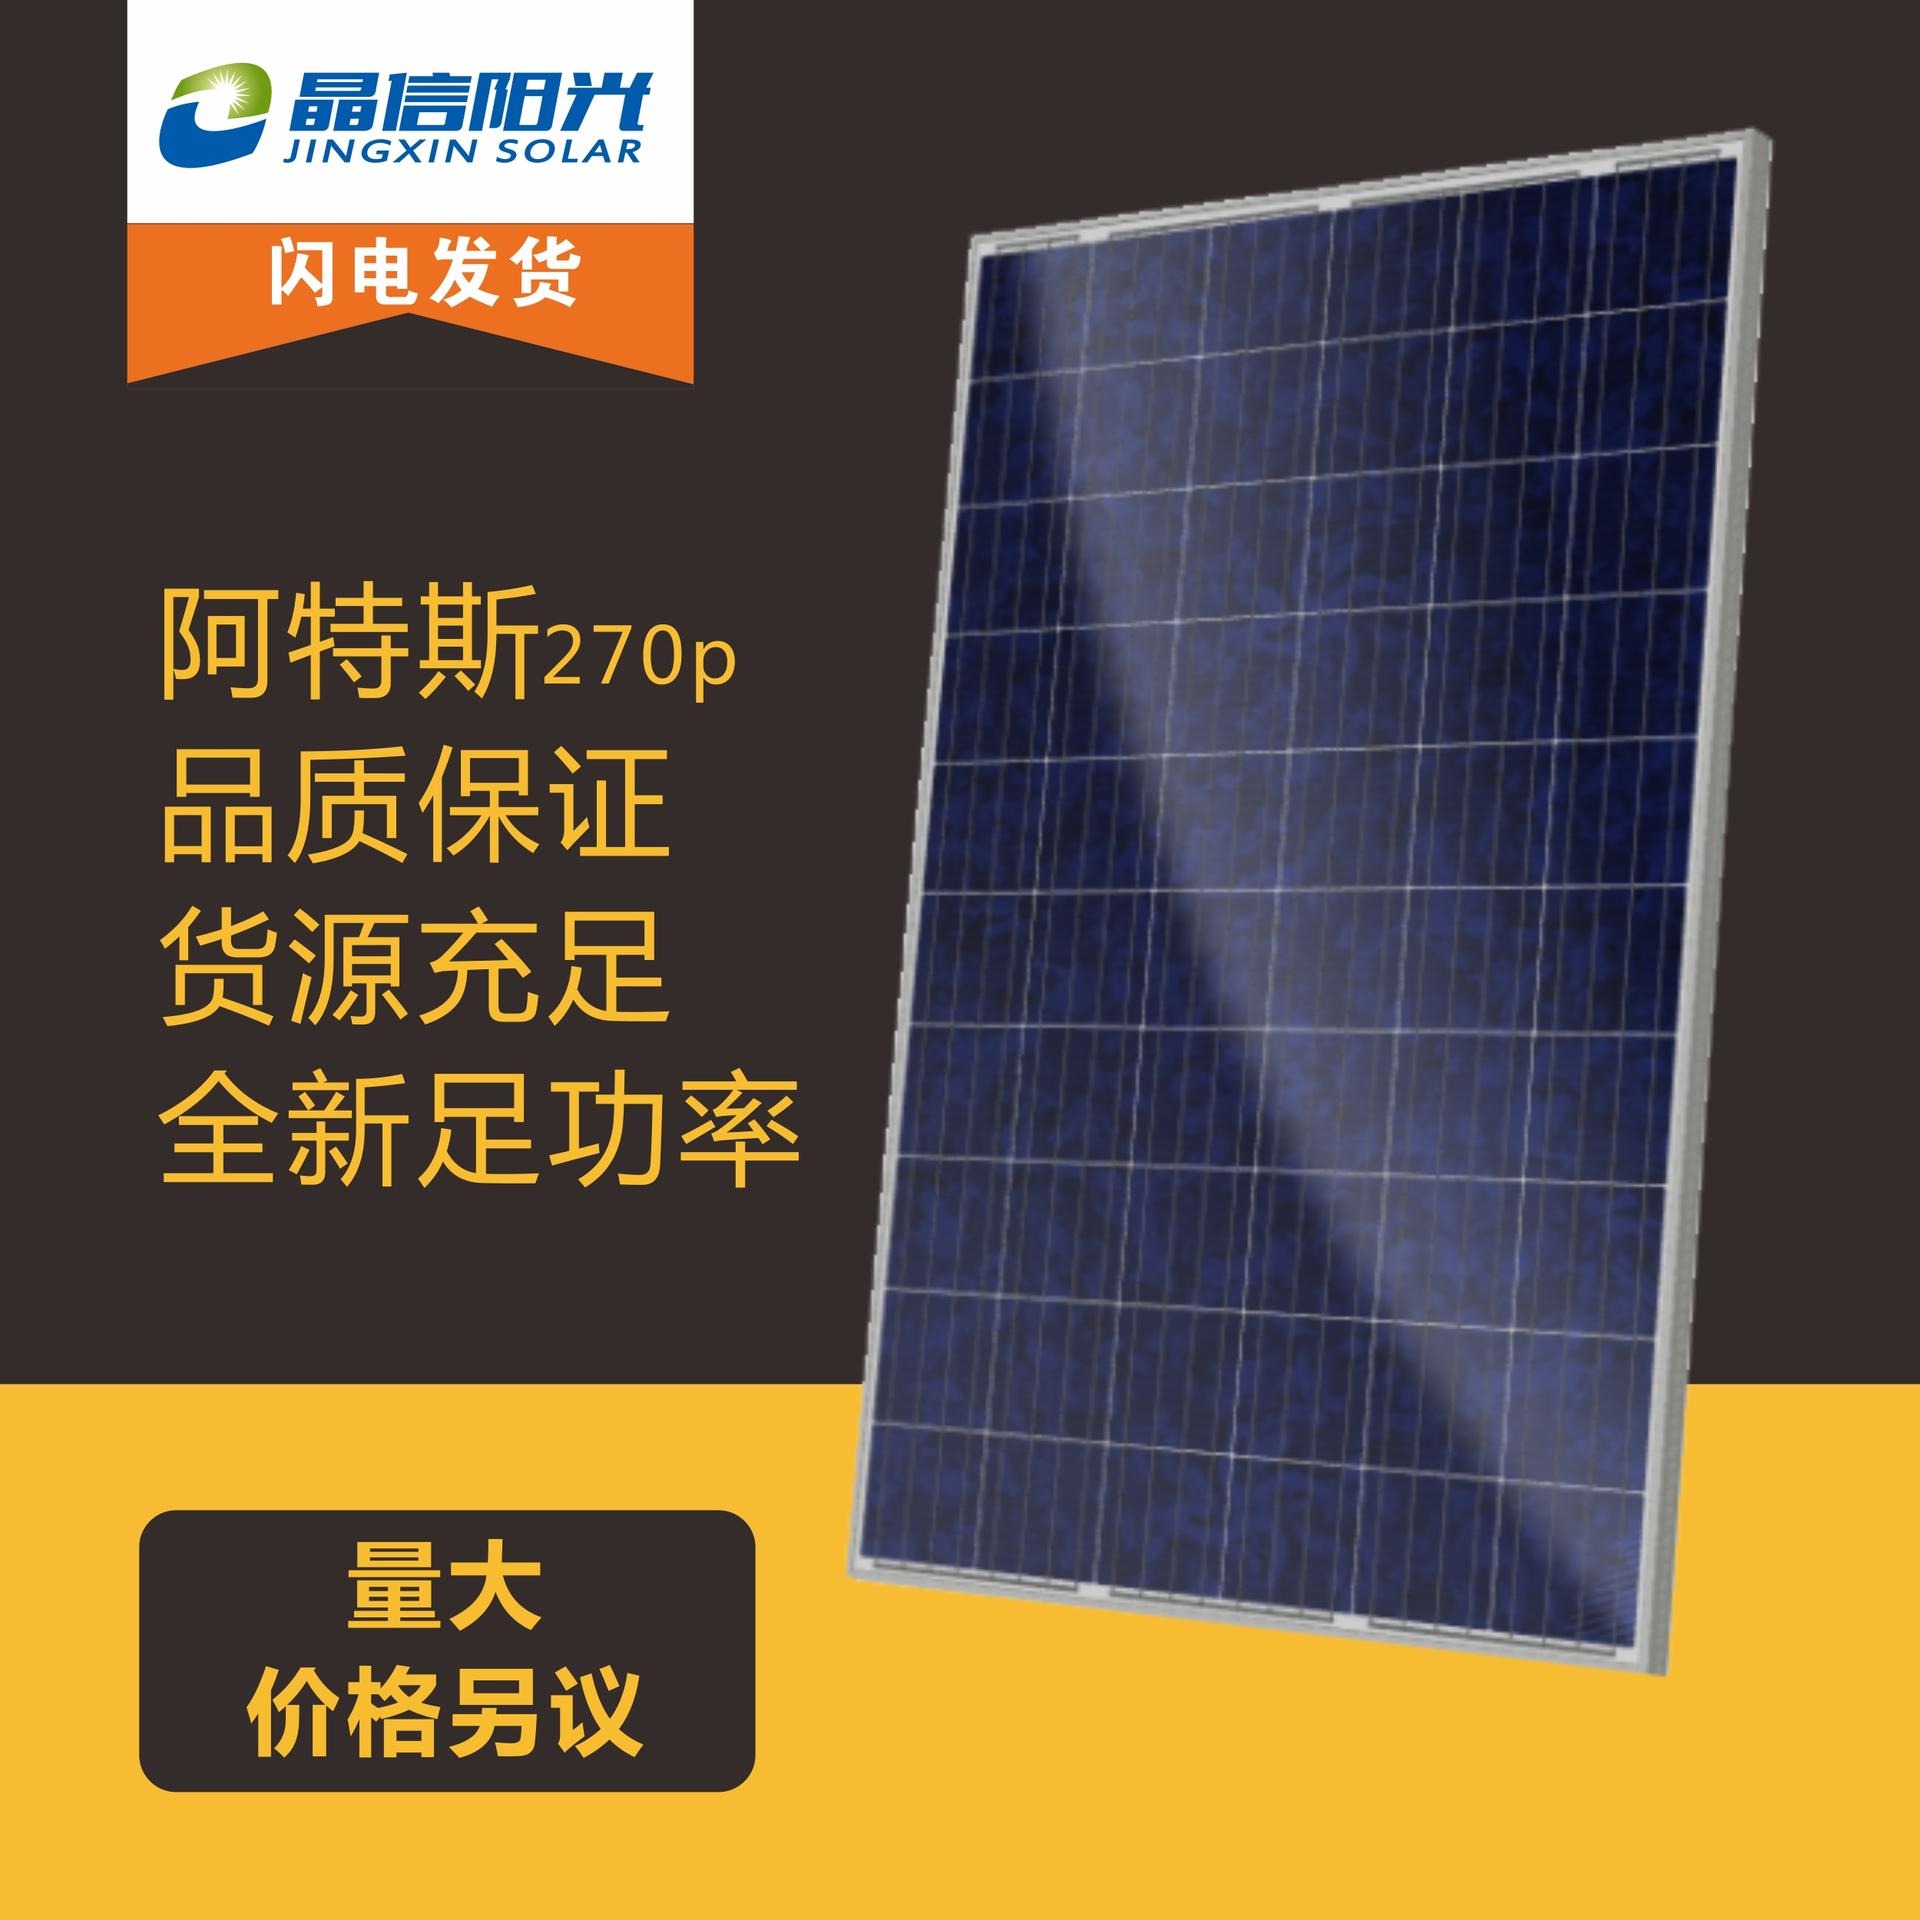 屋顶发电光伏板 阿特斯多晶270W 光伏组件 太阳能发电并网专用 太阳能发电设备图片